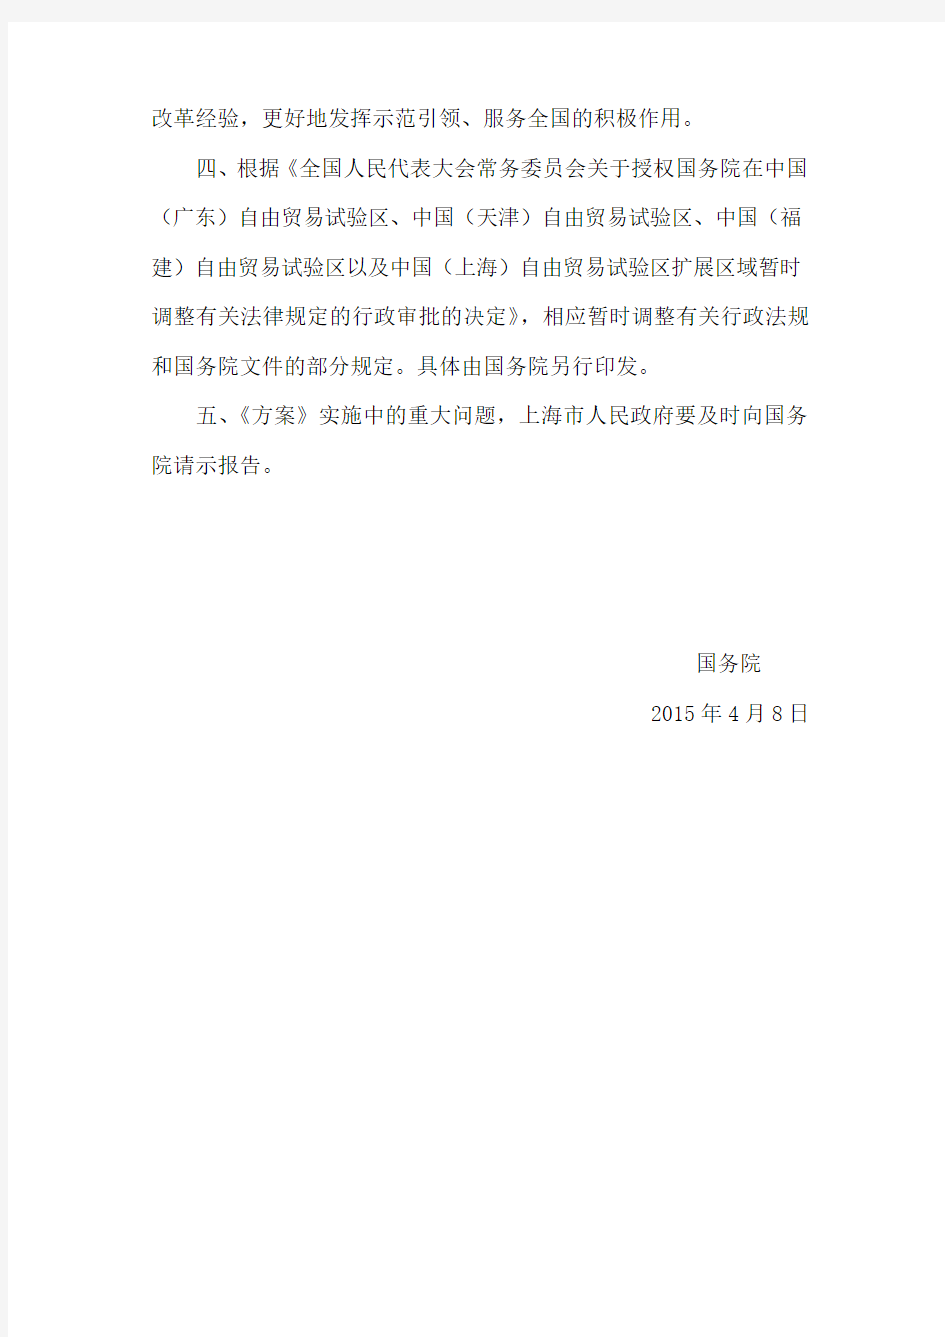 《进一步深化中国(上海)自由贸易试验区改革开放方案》(国发〔2015〕21号)